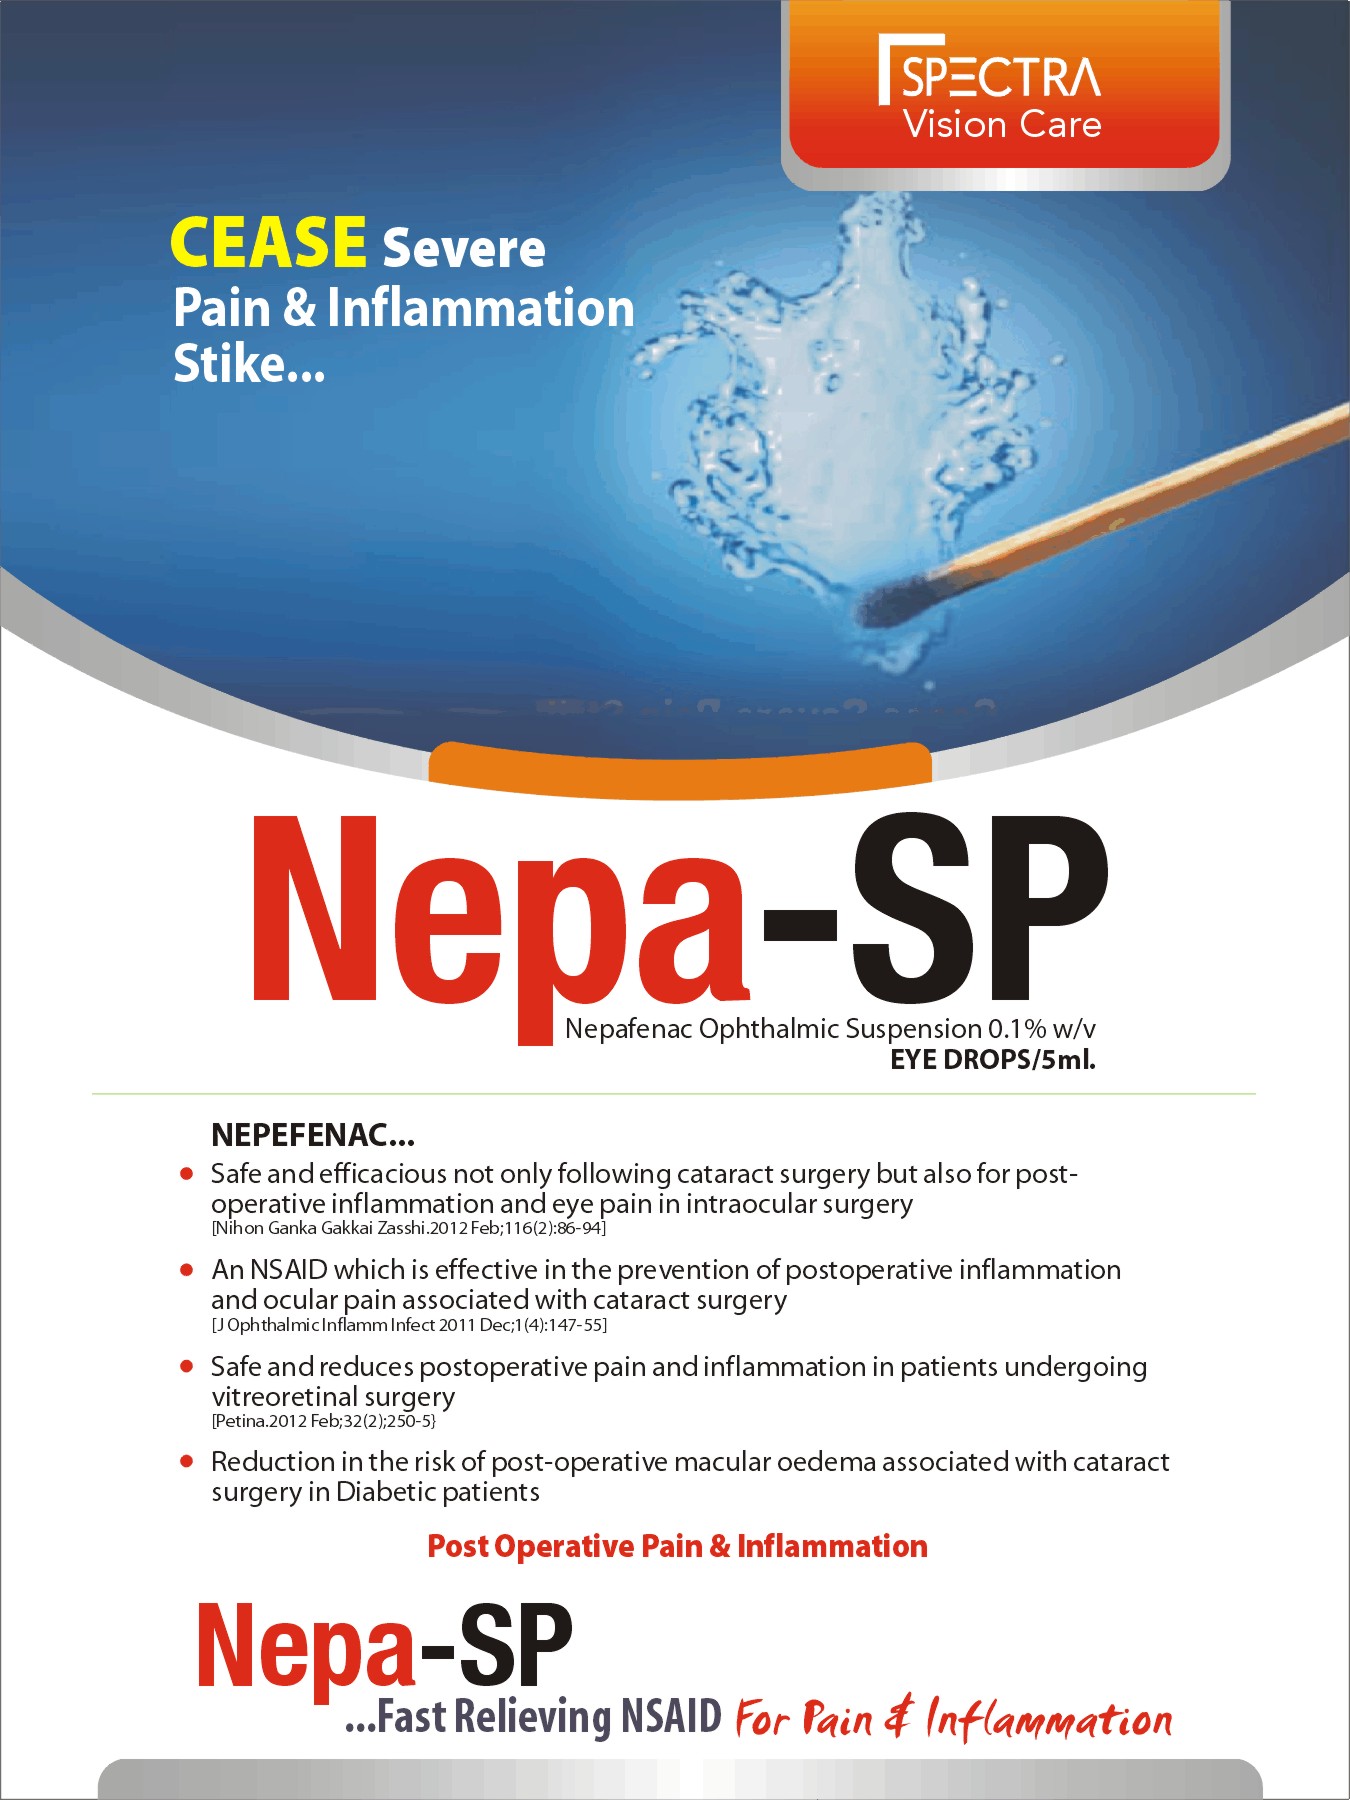 NEPA-SP